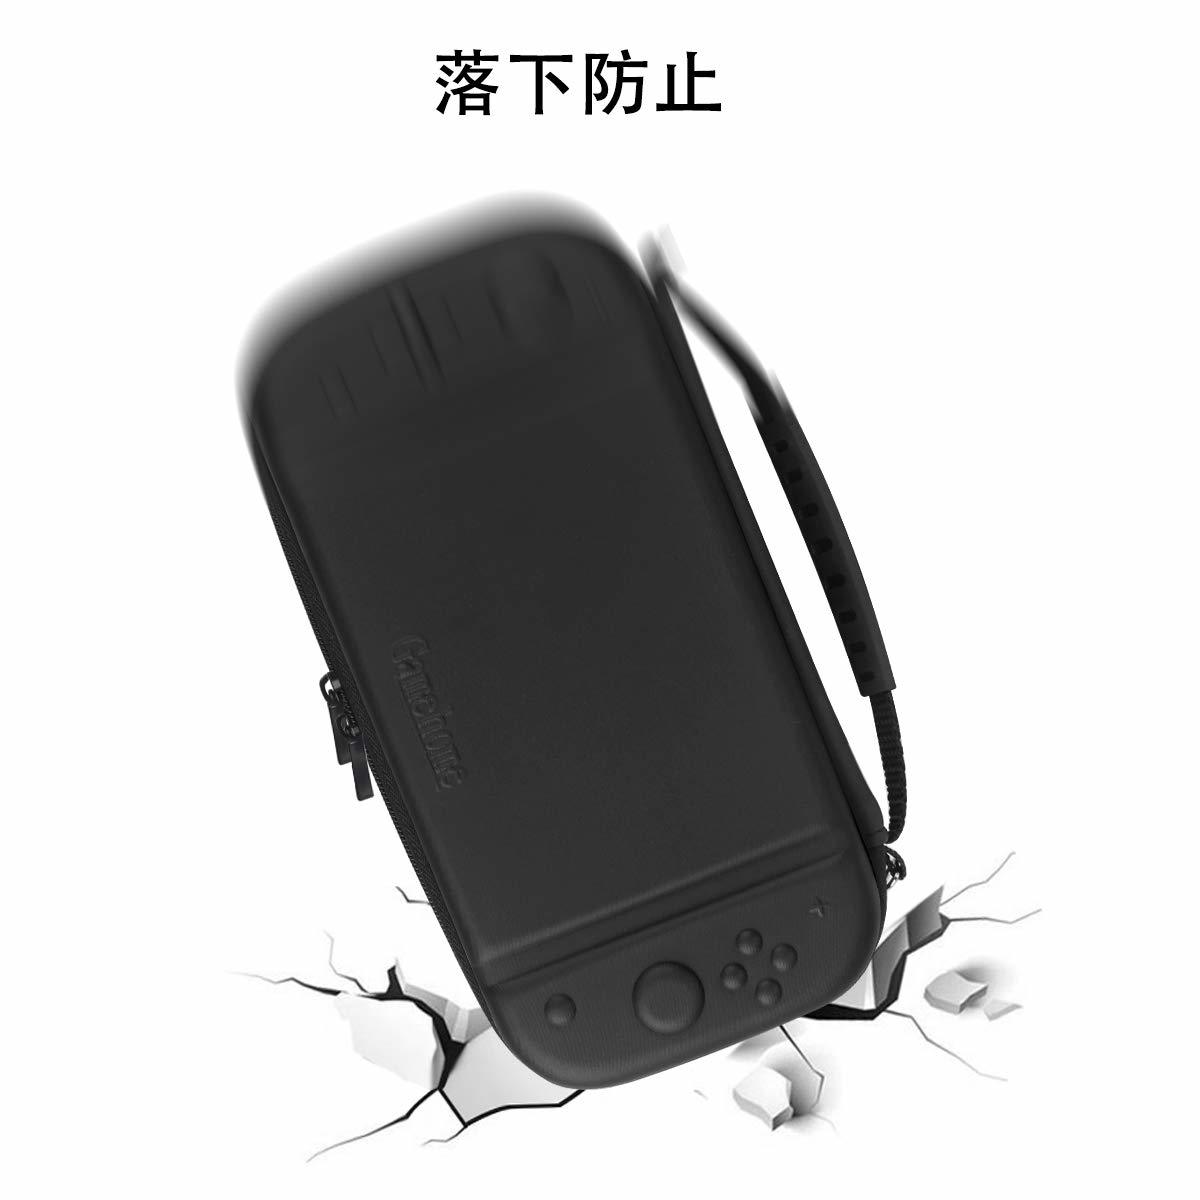 【送料無料】Switch Lite ケース Nintendo Switch Lite 用キャリングケース 大容量 収納バッグ ハード 軽量化 防塵 ショック防止 #TB270_画像3